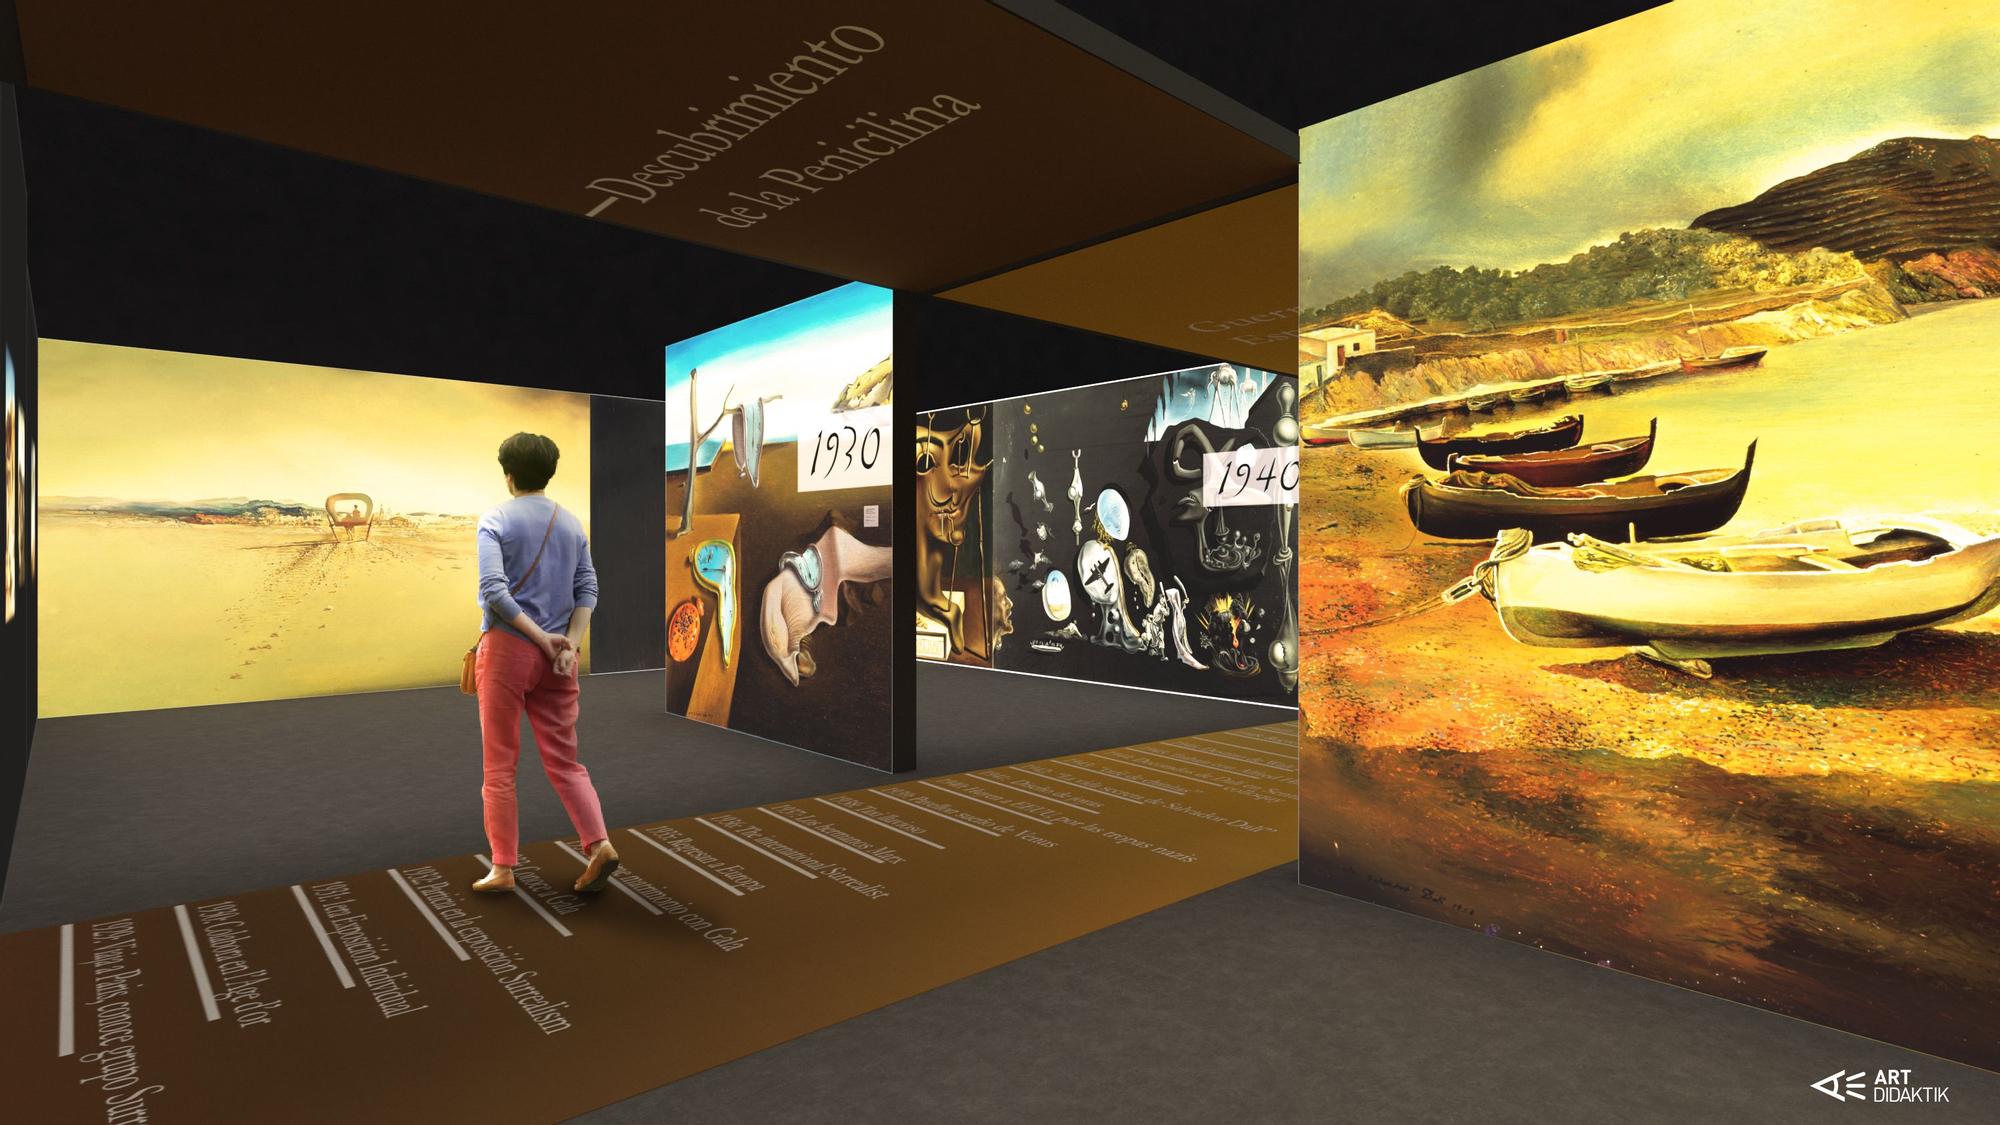 Desafío Dalí permet entrar plenament en el laberint dalinià